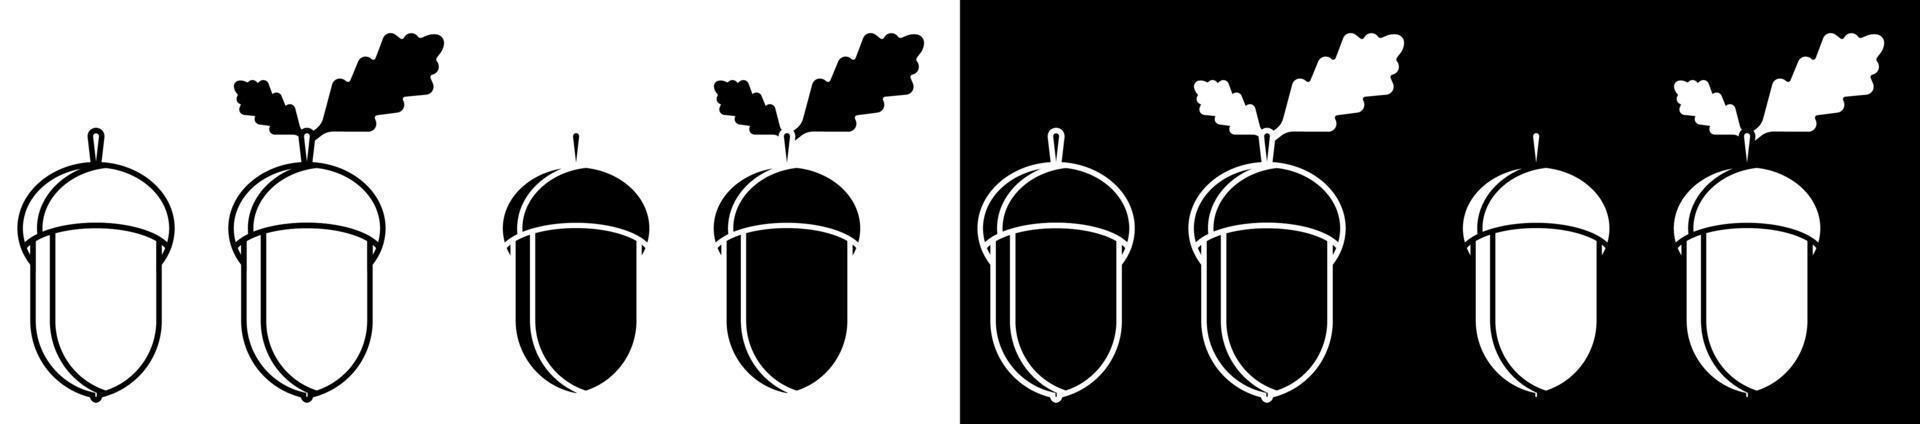 conjunto de ícones de bolota. carvalho, bosque de carvalhos. vetor preto e branco em estilo minimalista